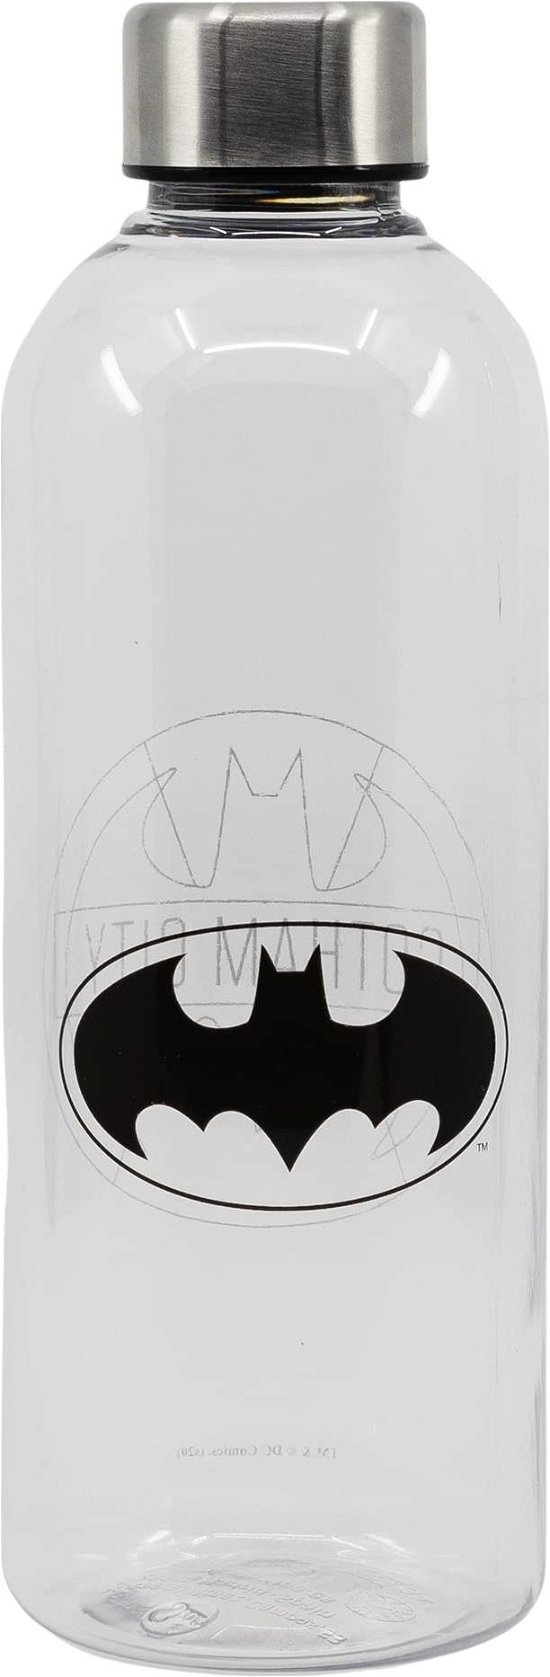 Plastic Bottle - Size 850ml - Batman - Koopwaar -  - 8412497855650 - 